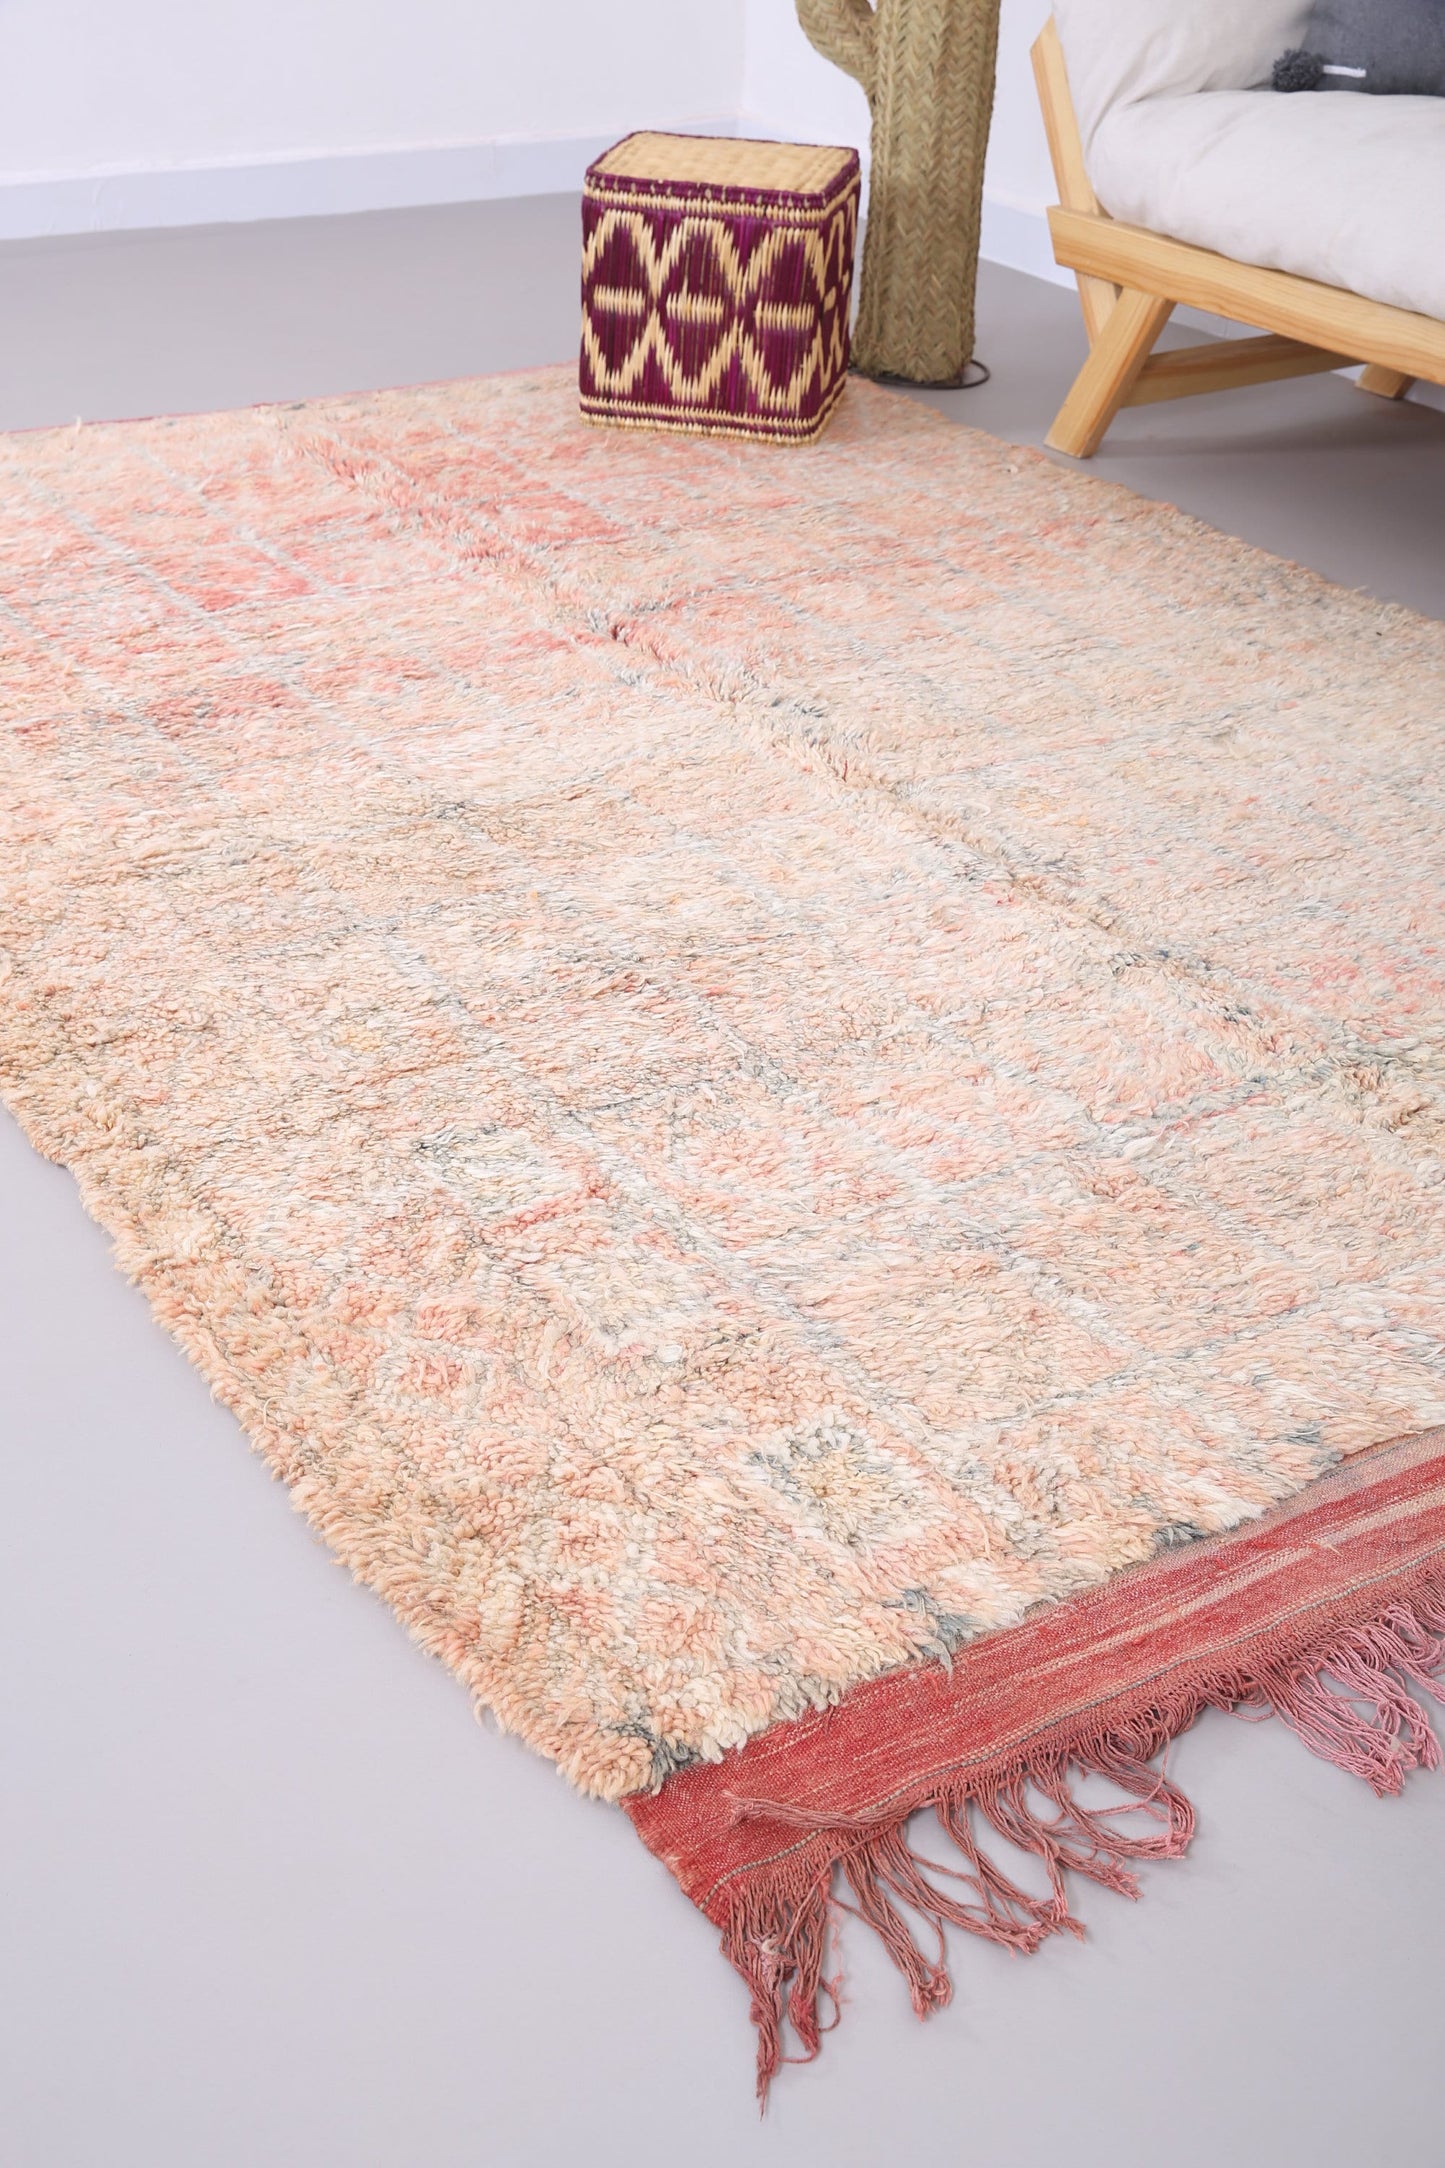 Vintage Boujaad blasser Teppich 5,8 FT x 8,6 FT - Vintage marokkanischer Teppich - handgemachter Teppich - Marokko blasser Teppich - Boho alter Teppich - Vintage Tribal Teppich